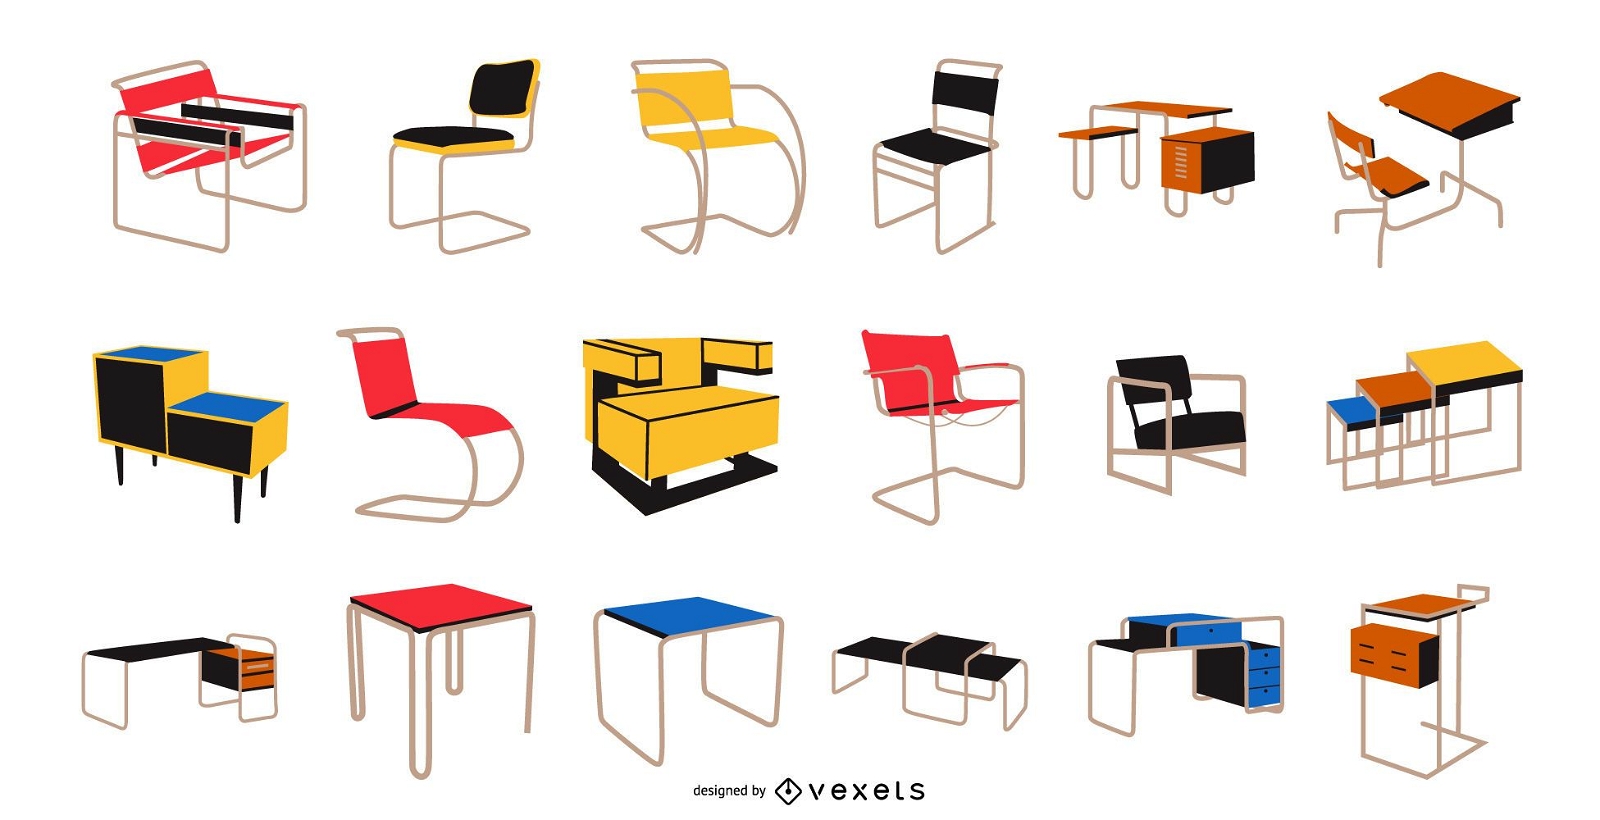 Paquete de muebles estilo Bauhaus